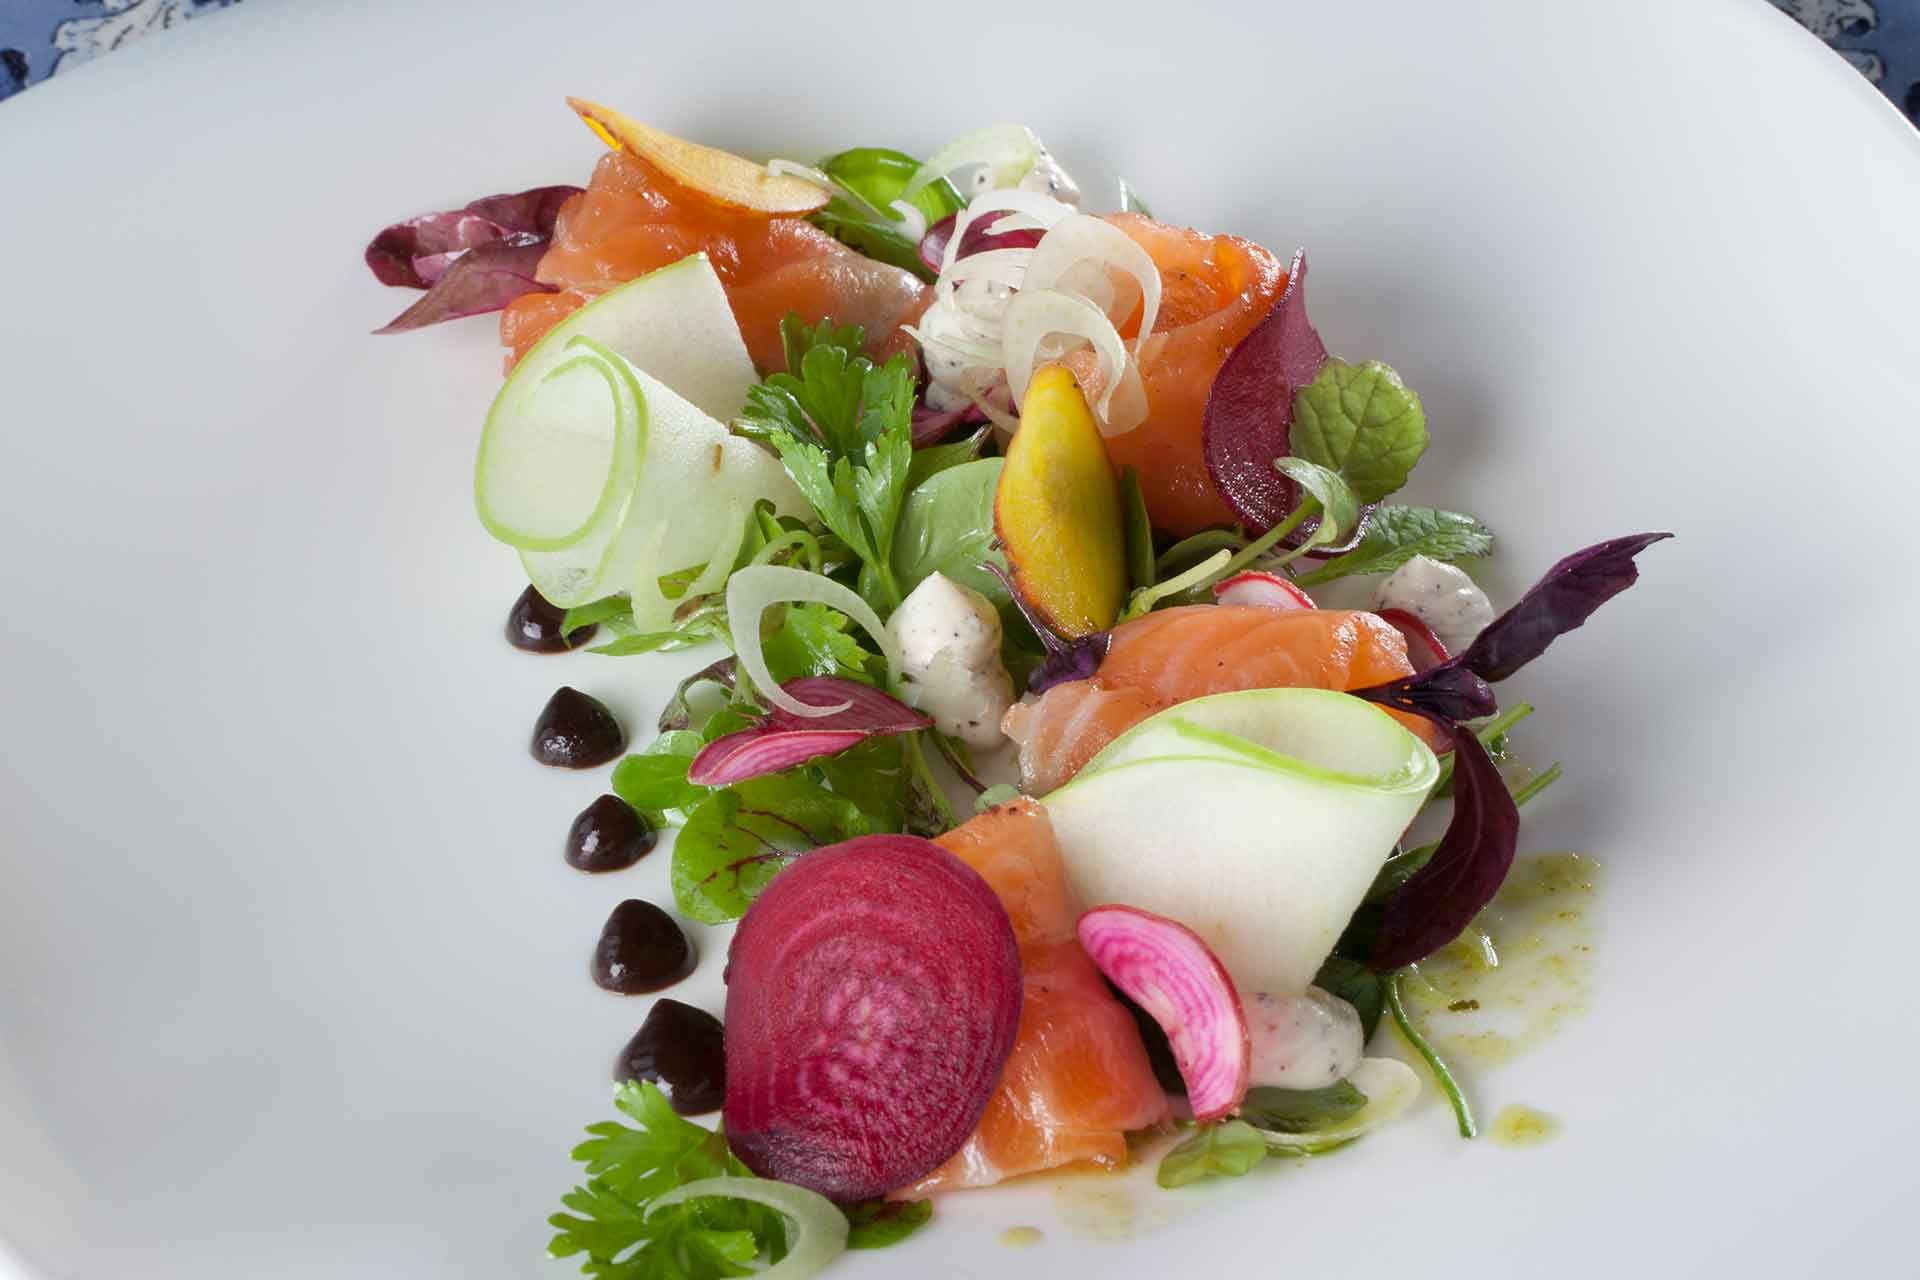 Salmon dish with De Grendel wine at De Grendel Restaurant – one of the top Cape Winelands restaurants.